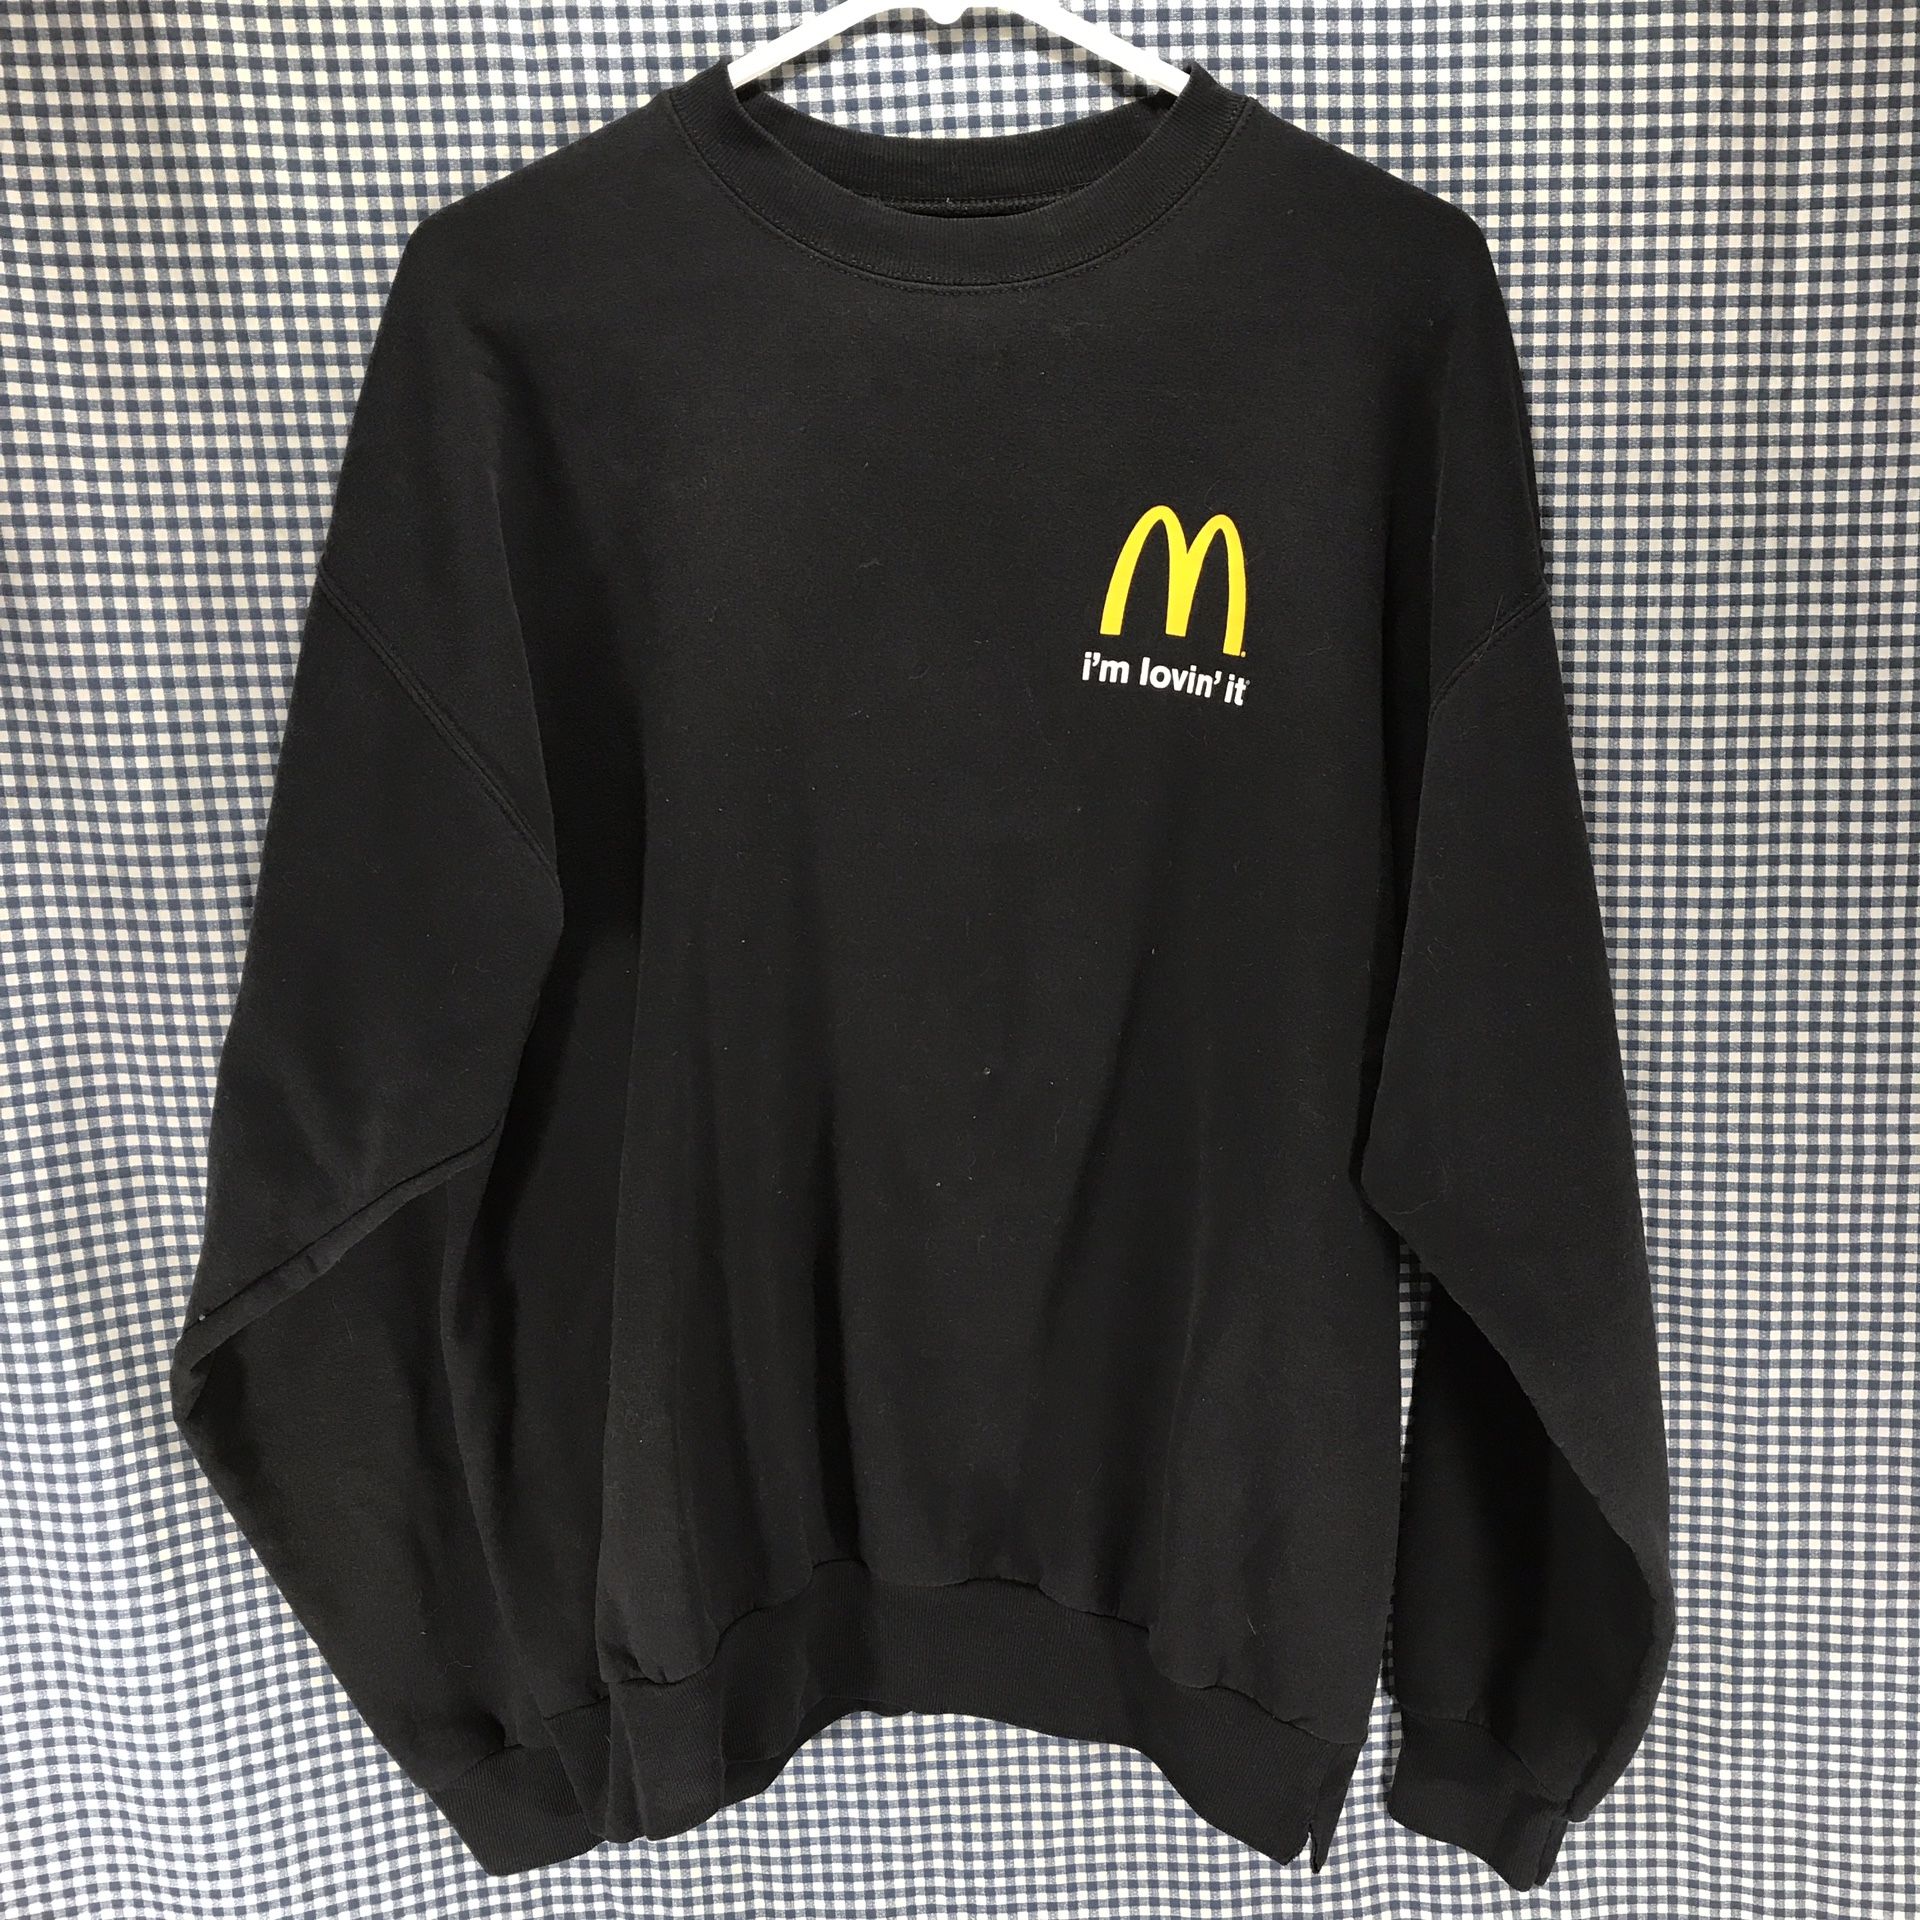 Hanes Black McDonald’s Crew Member’s Sweatshirt Men’s Size Large